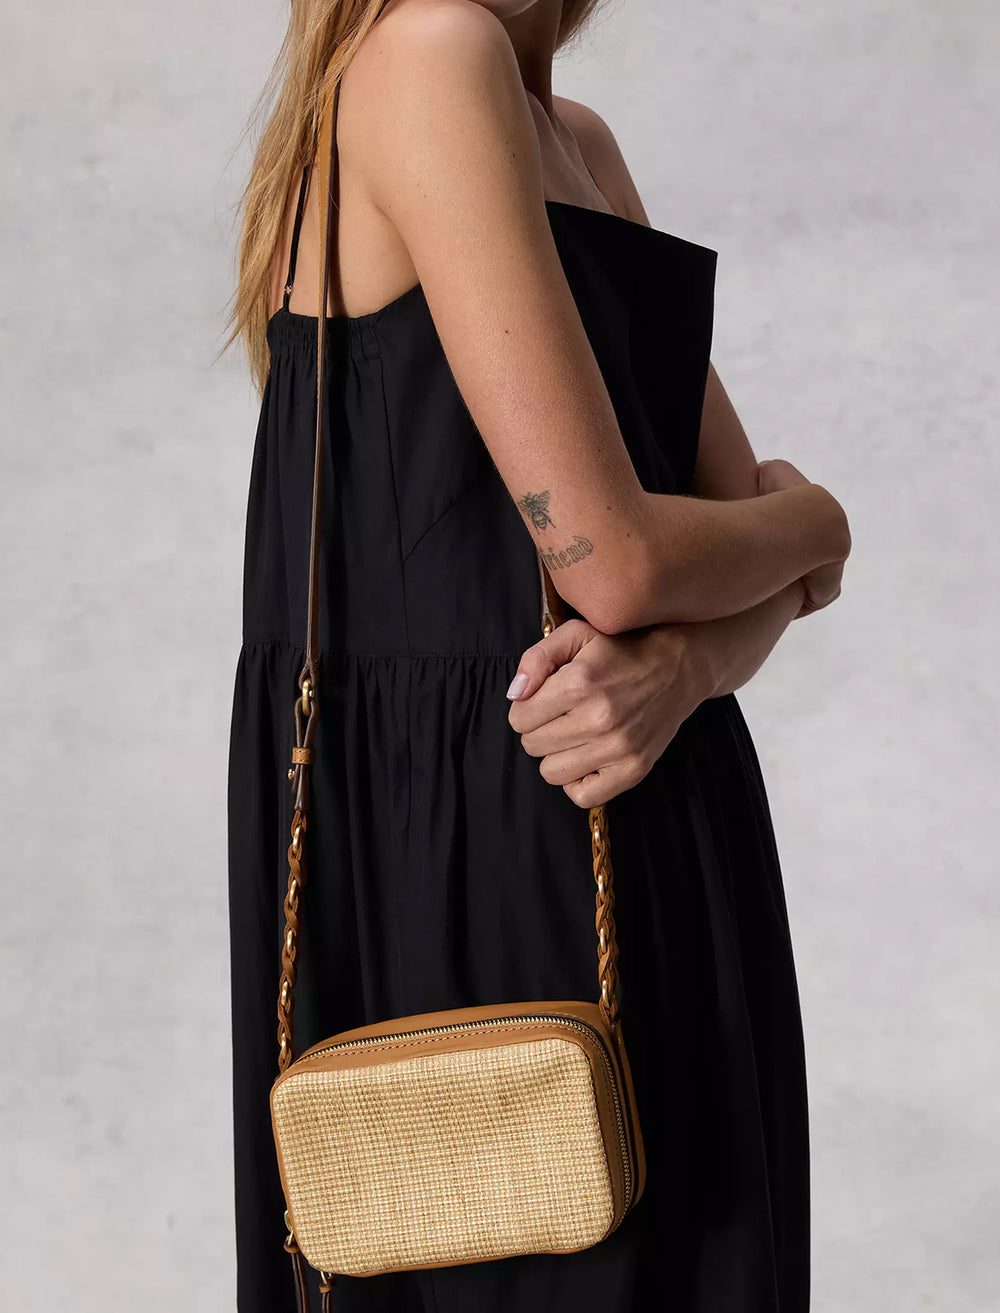 Model wearing Rag & Bone's cami straw cameral bag in natural on her shoulder.